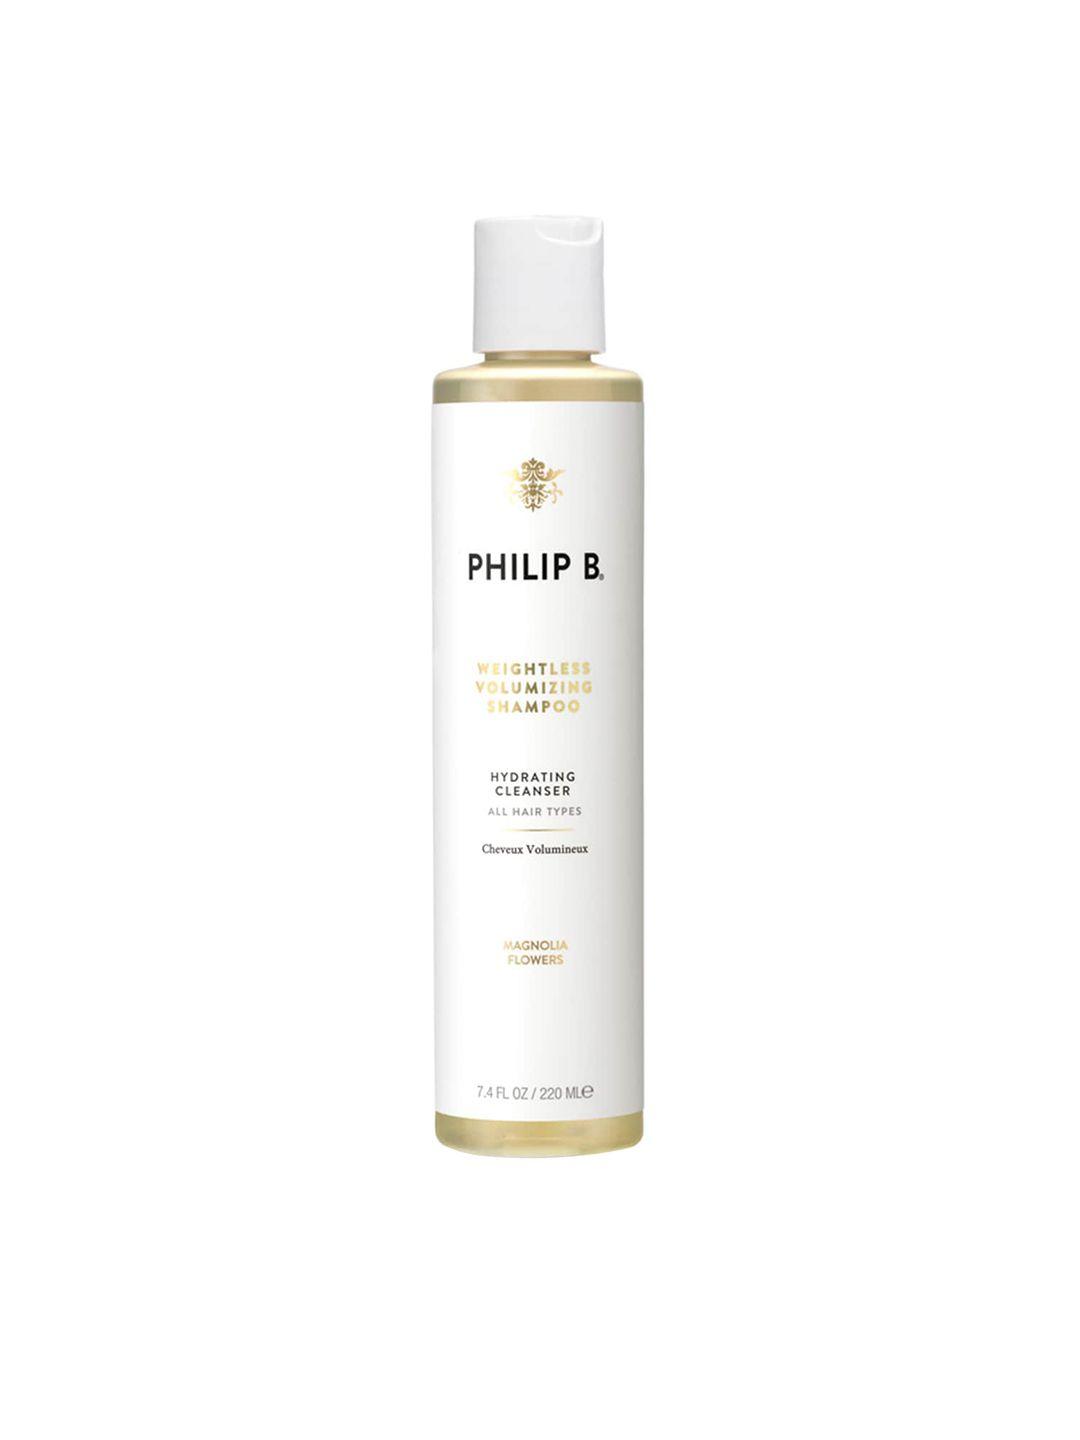 philip b weightless volumizing magnolia flowers shampoo - 220ml